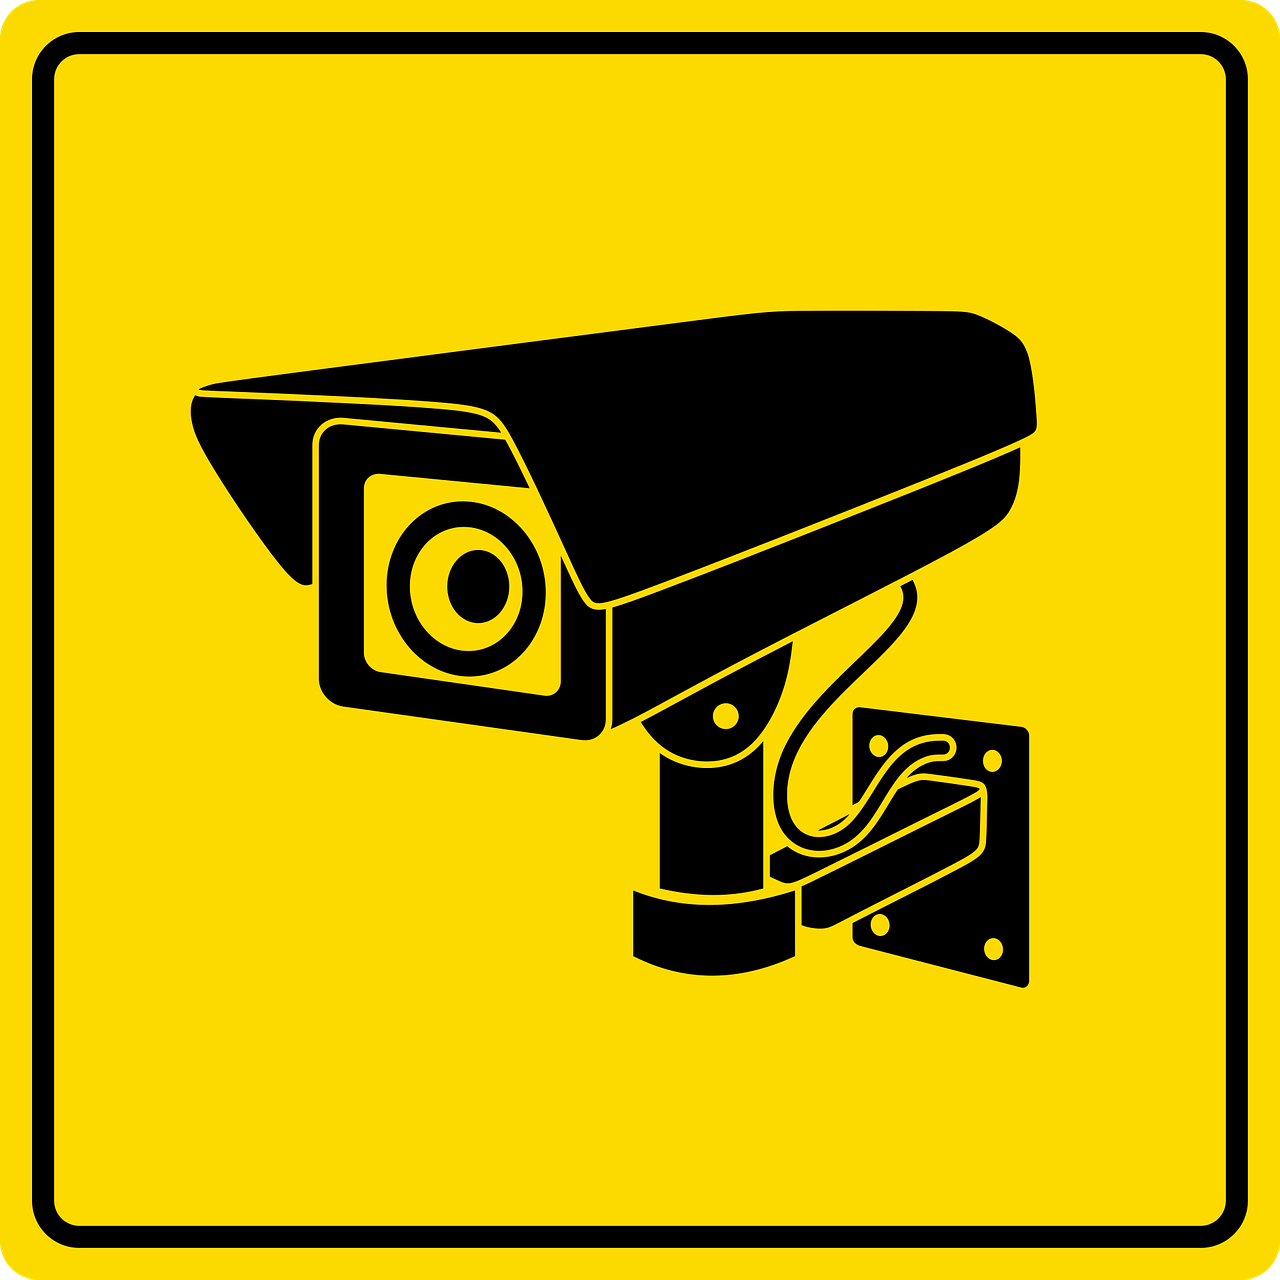 CCTV camera sign